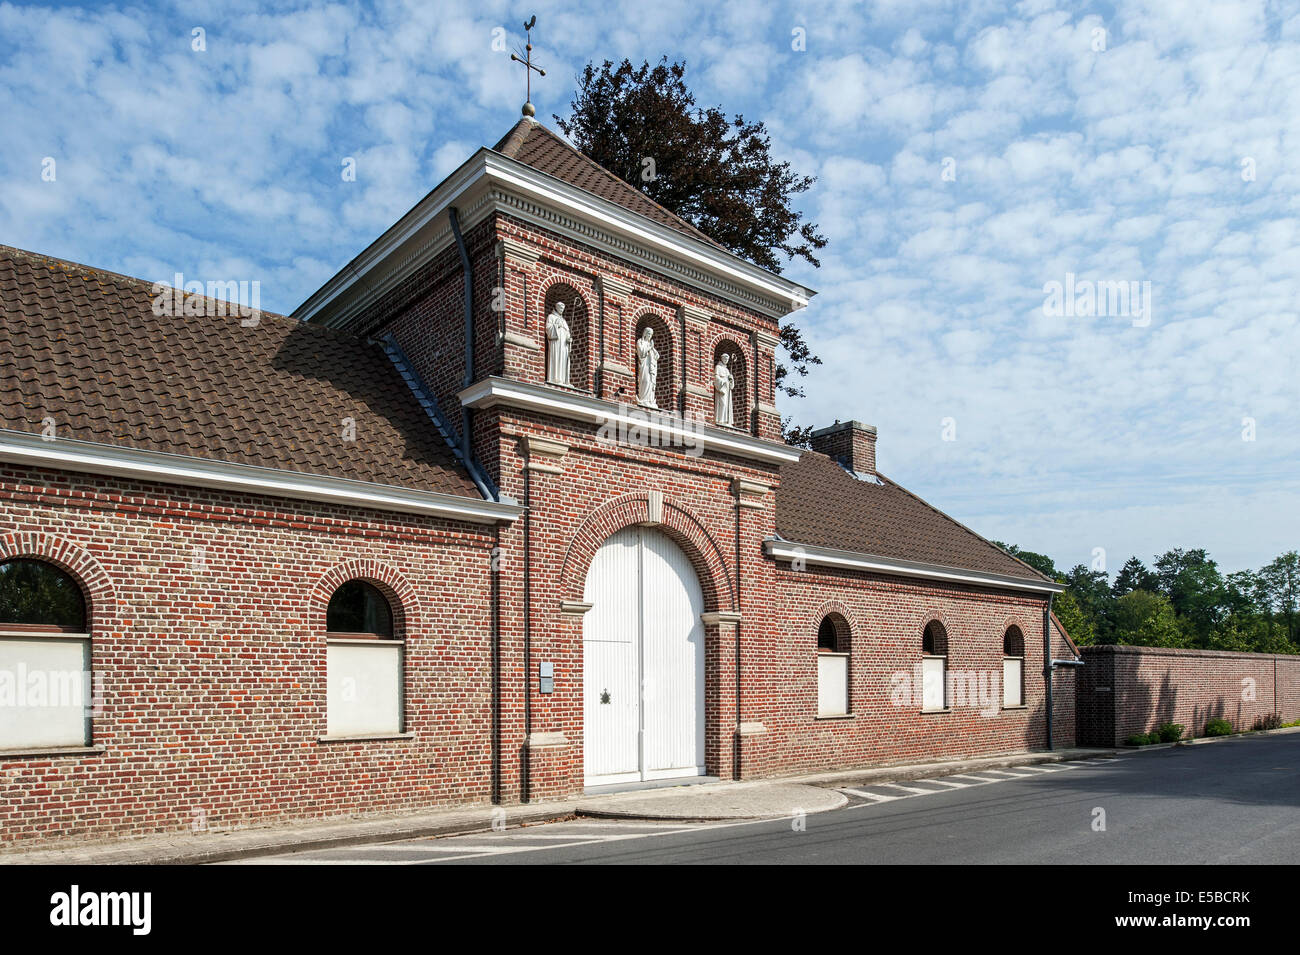 Sint-Sixtusabdij / Abtei St. Sixtus Westvleteren und Brauerei der besten Biere der Welt, West-Flandern, Belgien Stockfoto